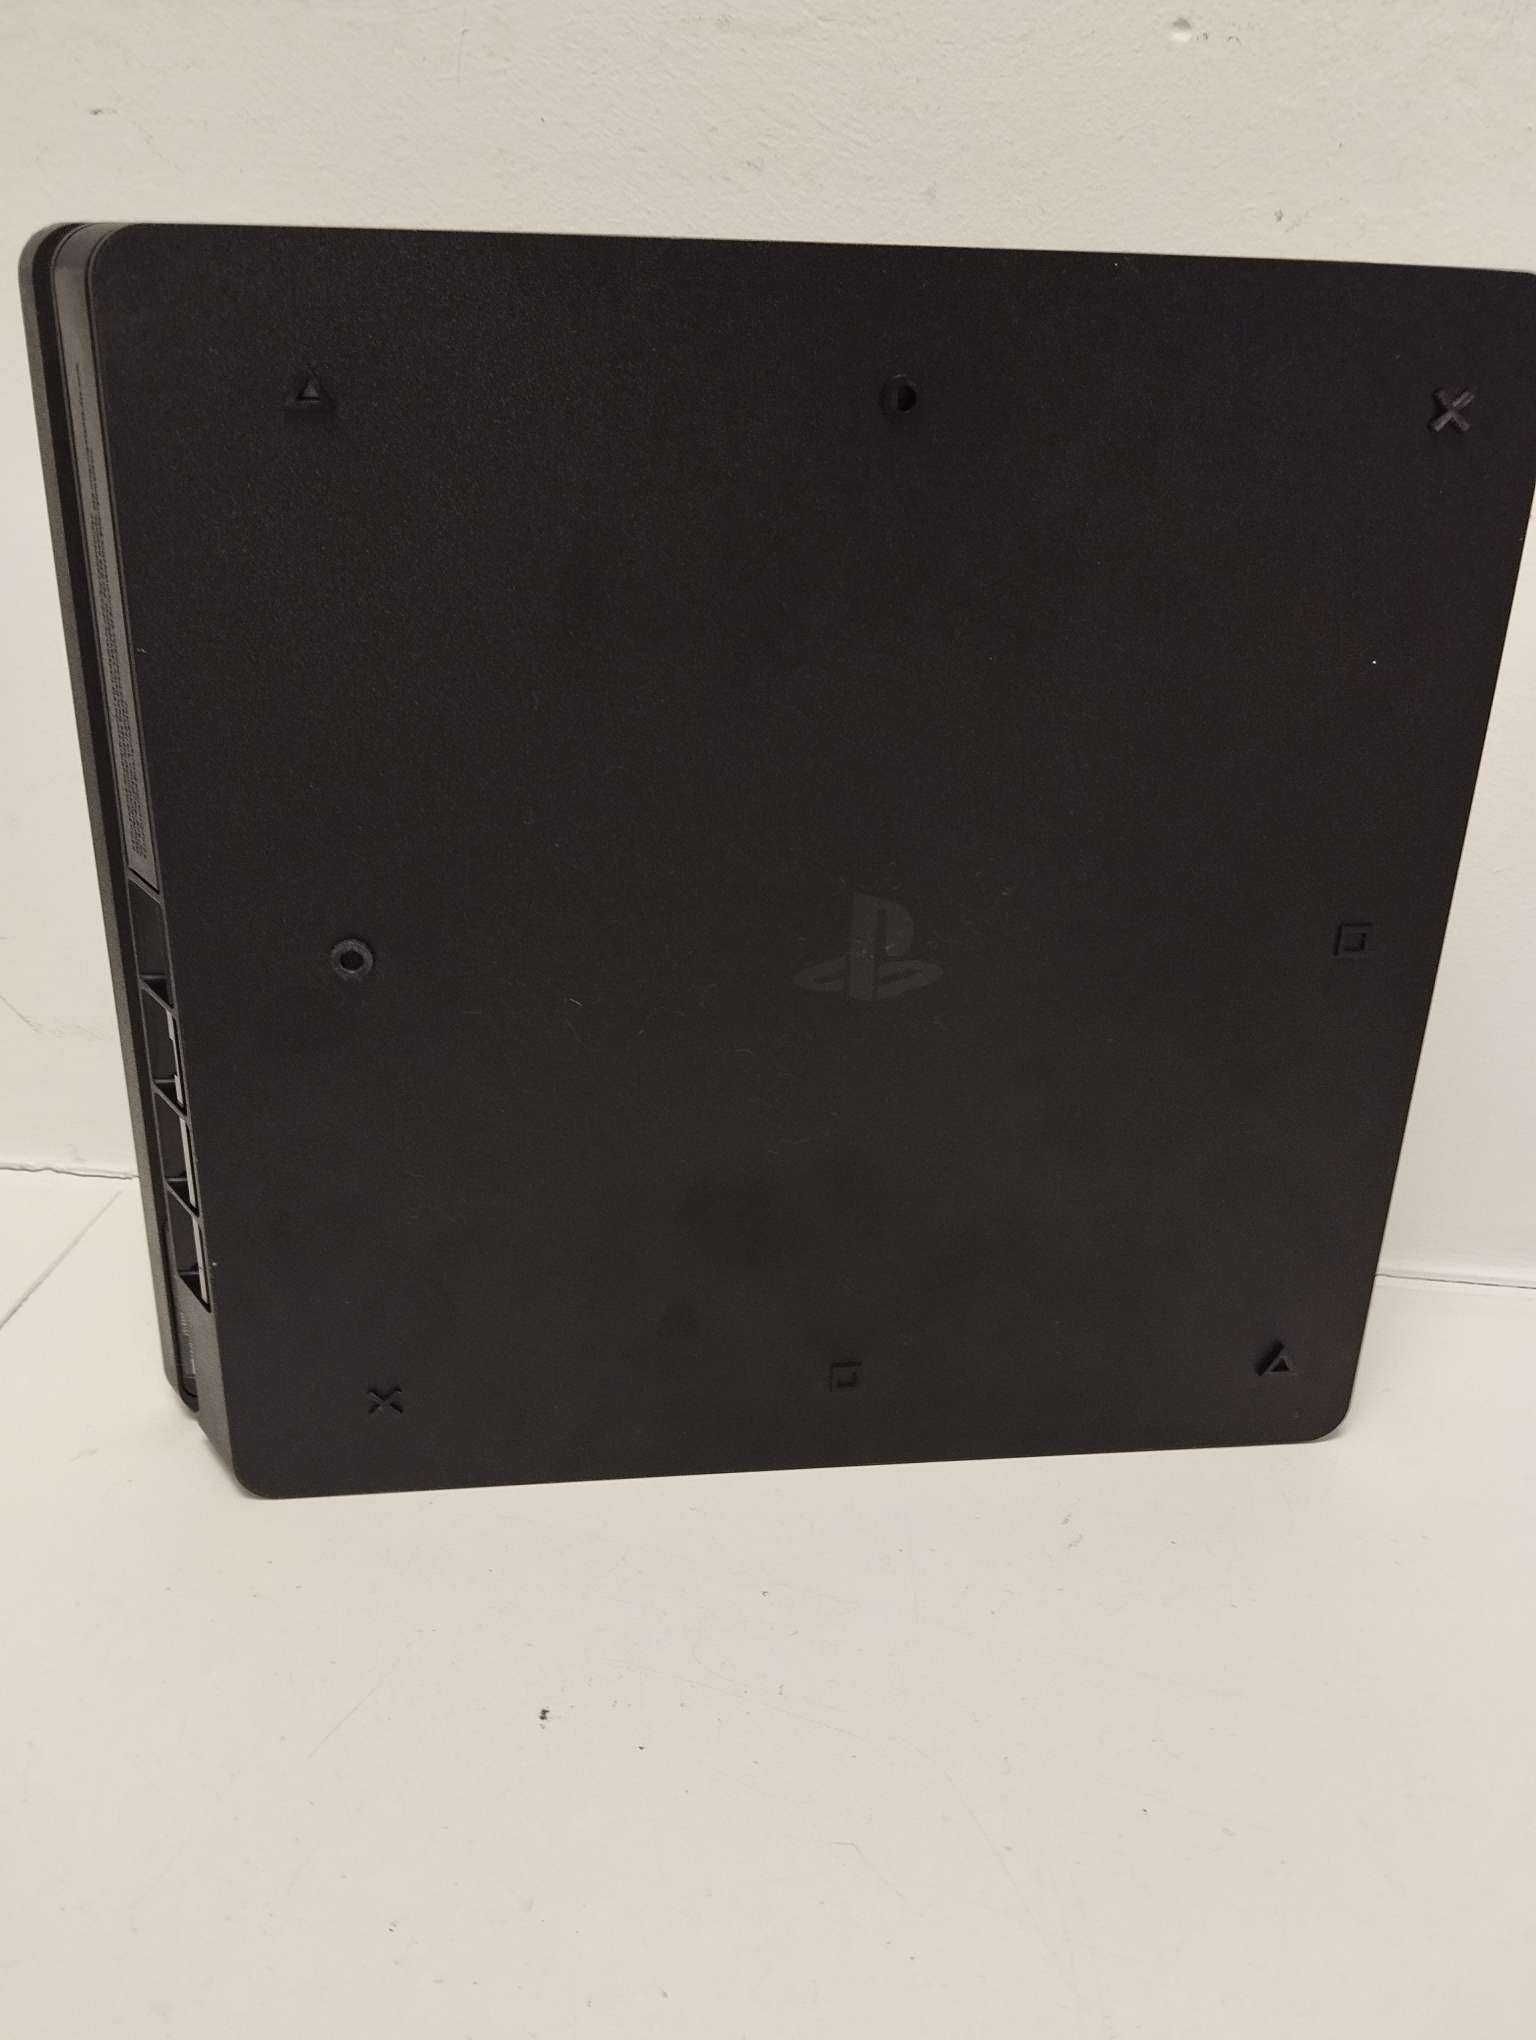 PS4 500GB cuh-2216A pad